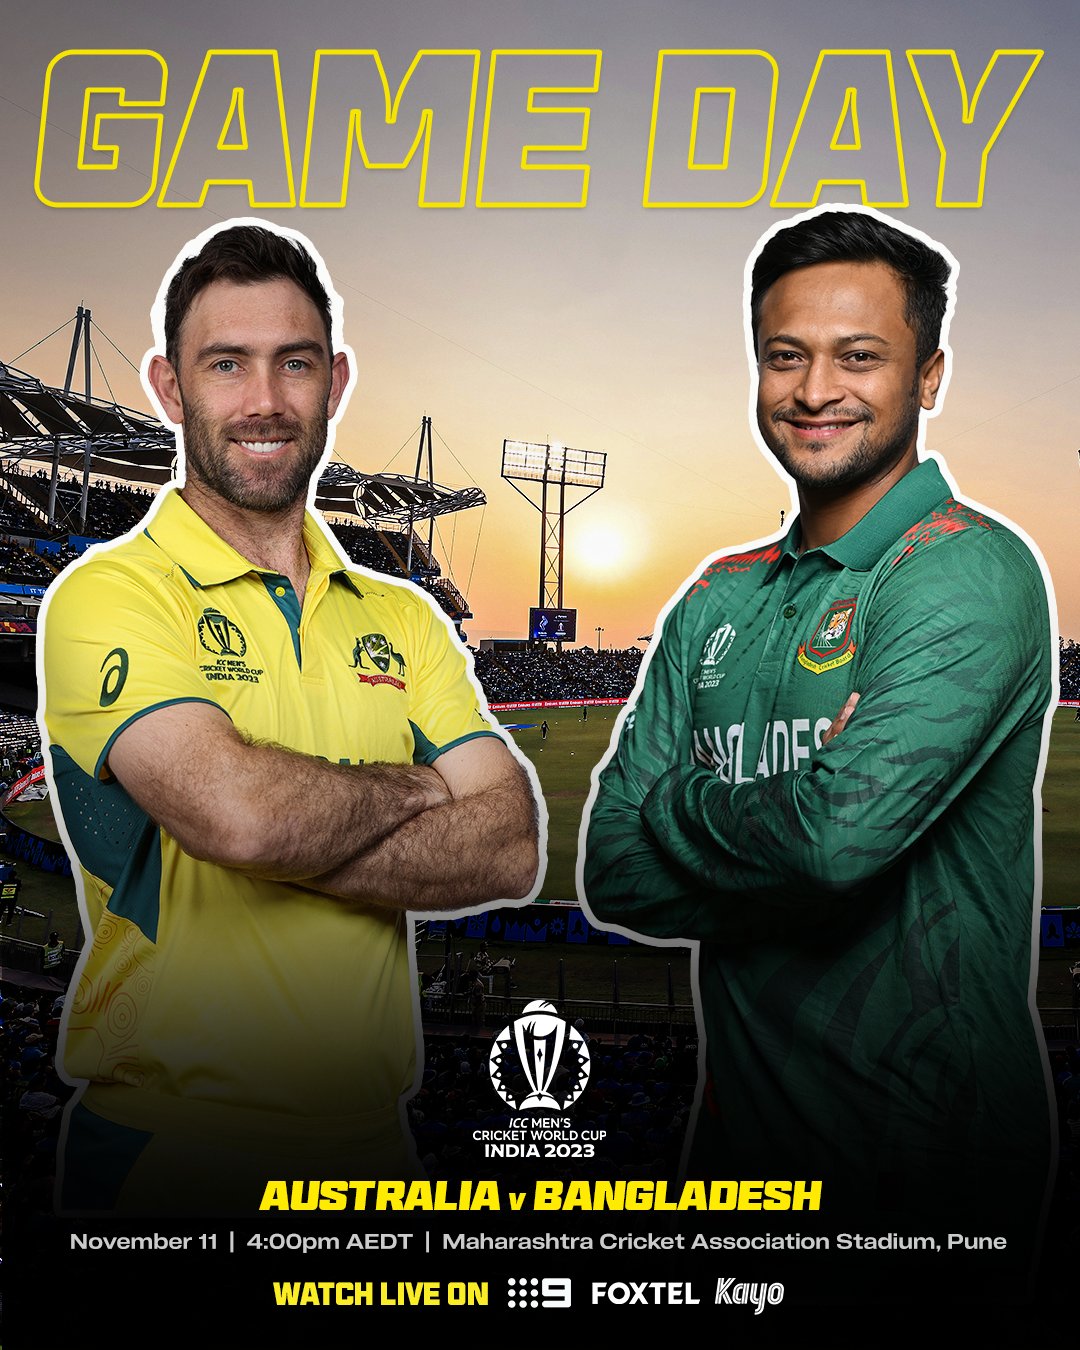 Australia vs Banglades